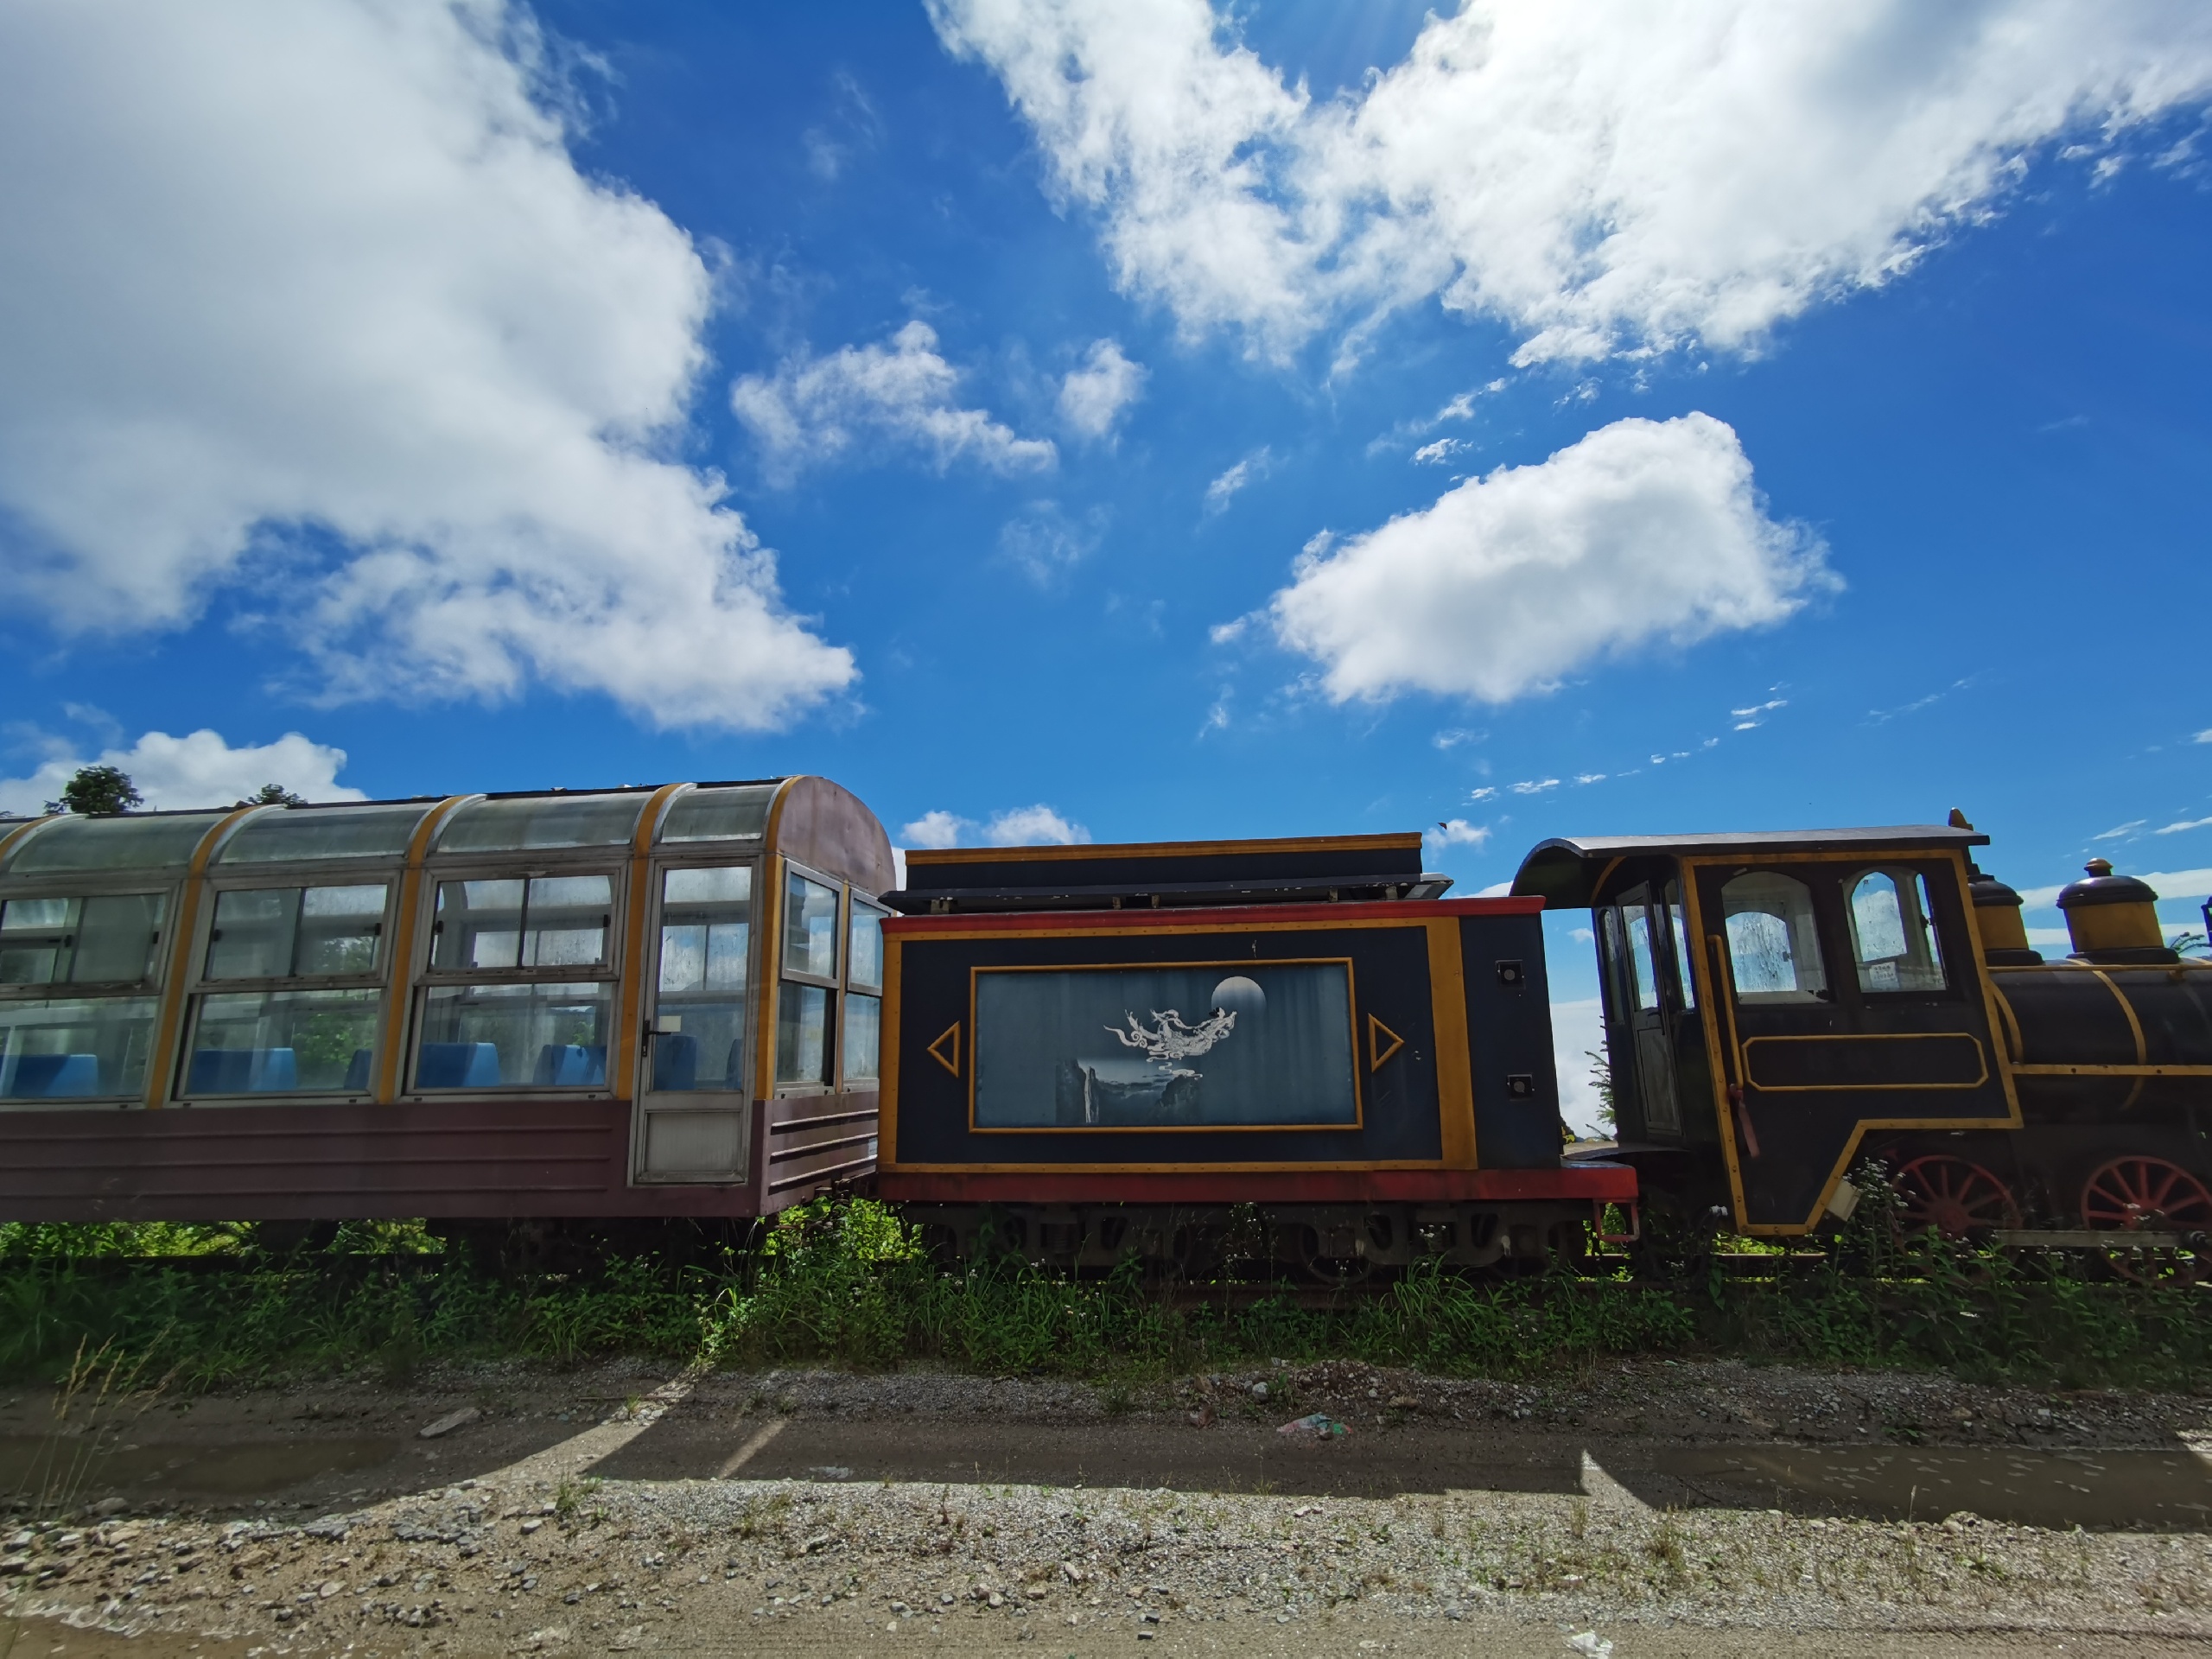 明月山高山观光小火车为明月山旅游配套项目 线路全长约3.95公里